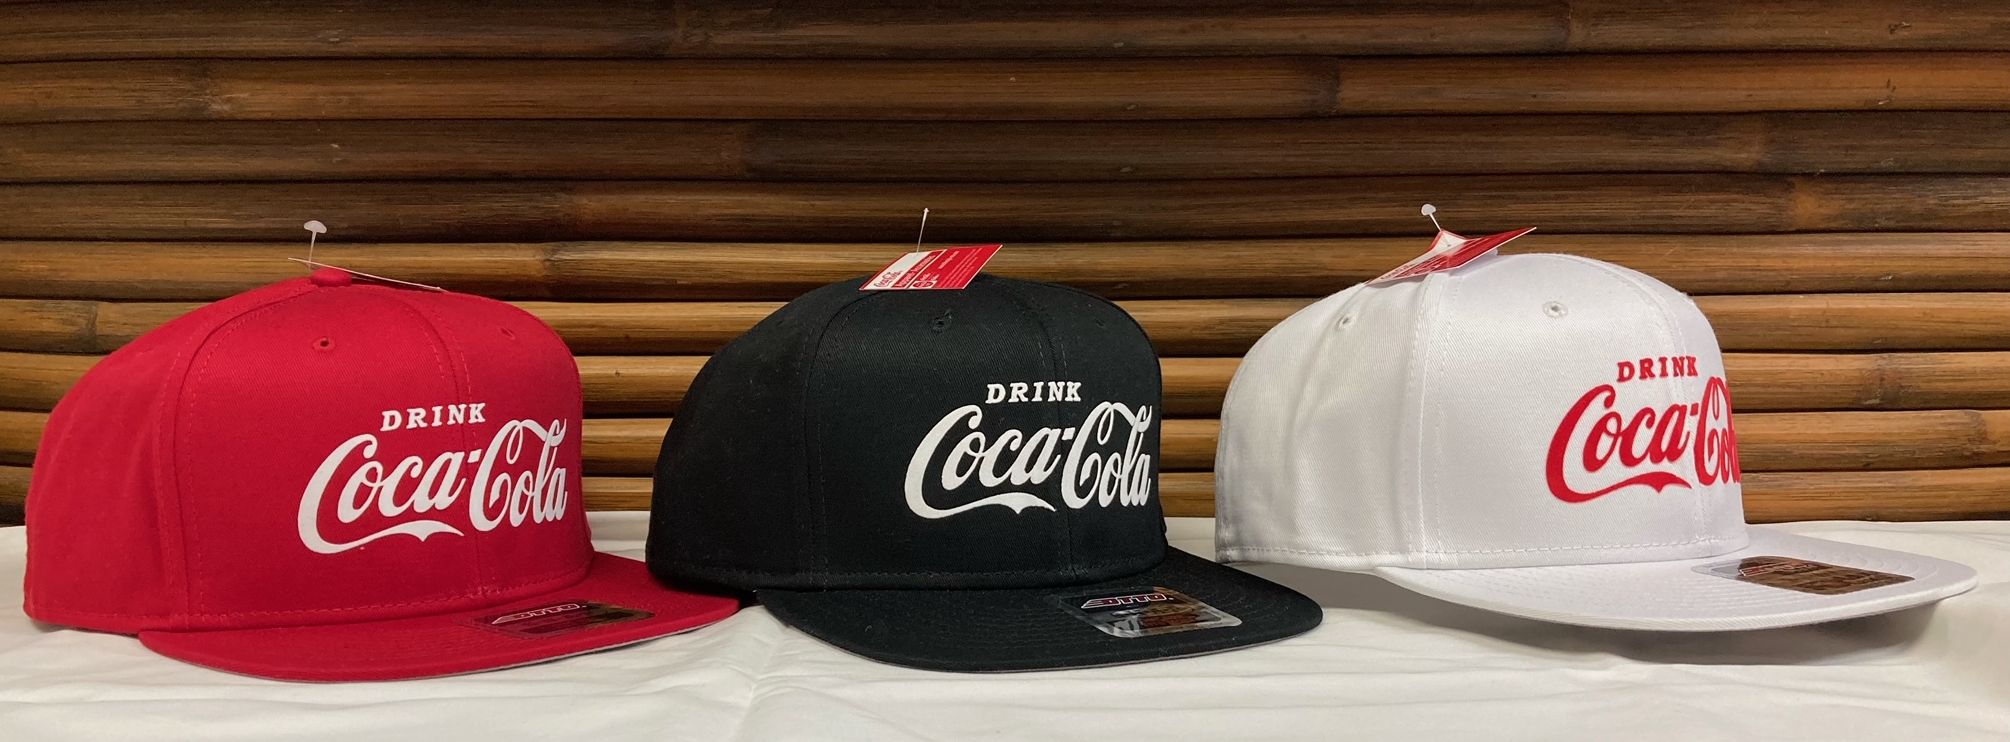 コカ・コーラ Coca Cola フラットバイザー 帽子 キャップ 全3色 レッド ブラック ホワイト CC-CCF2